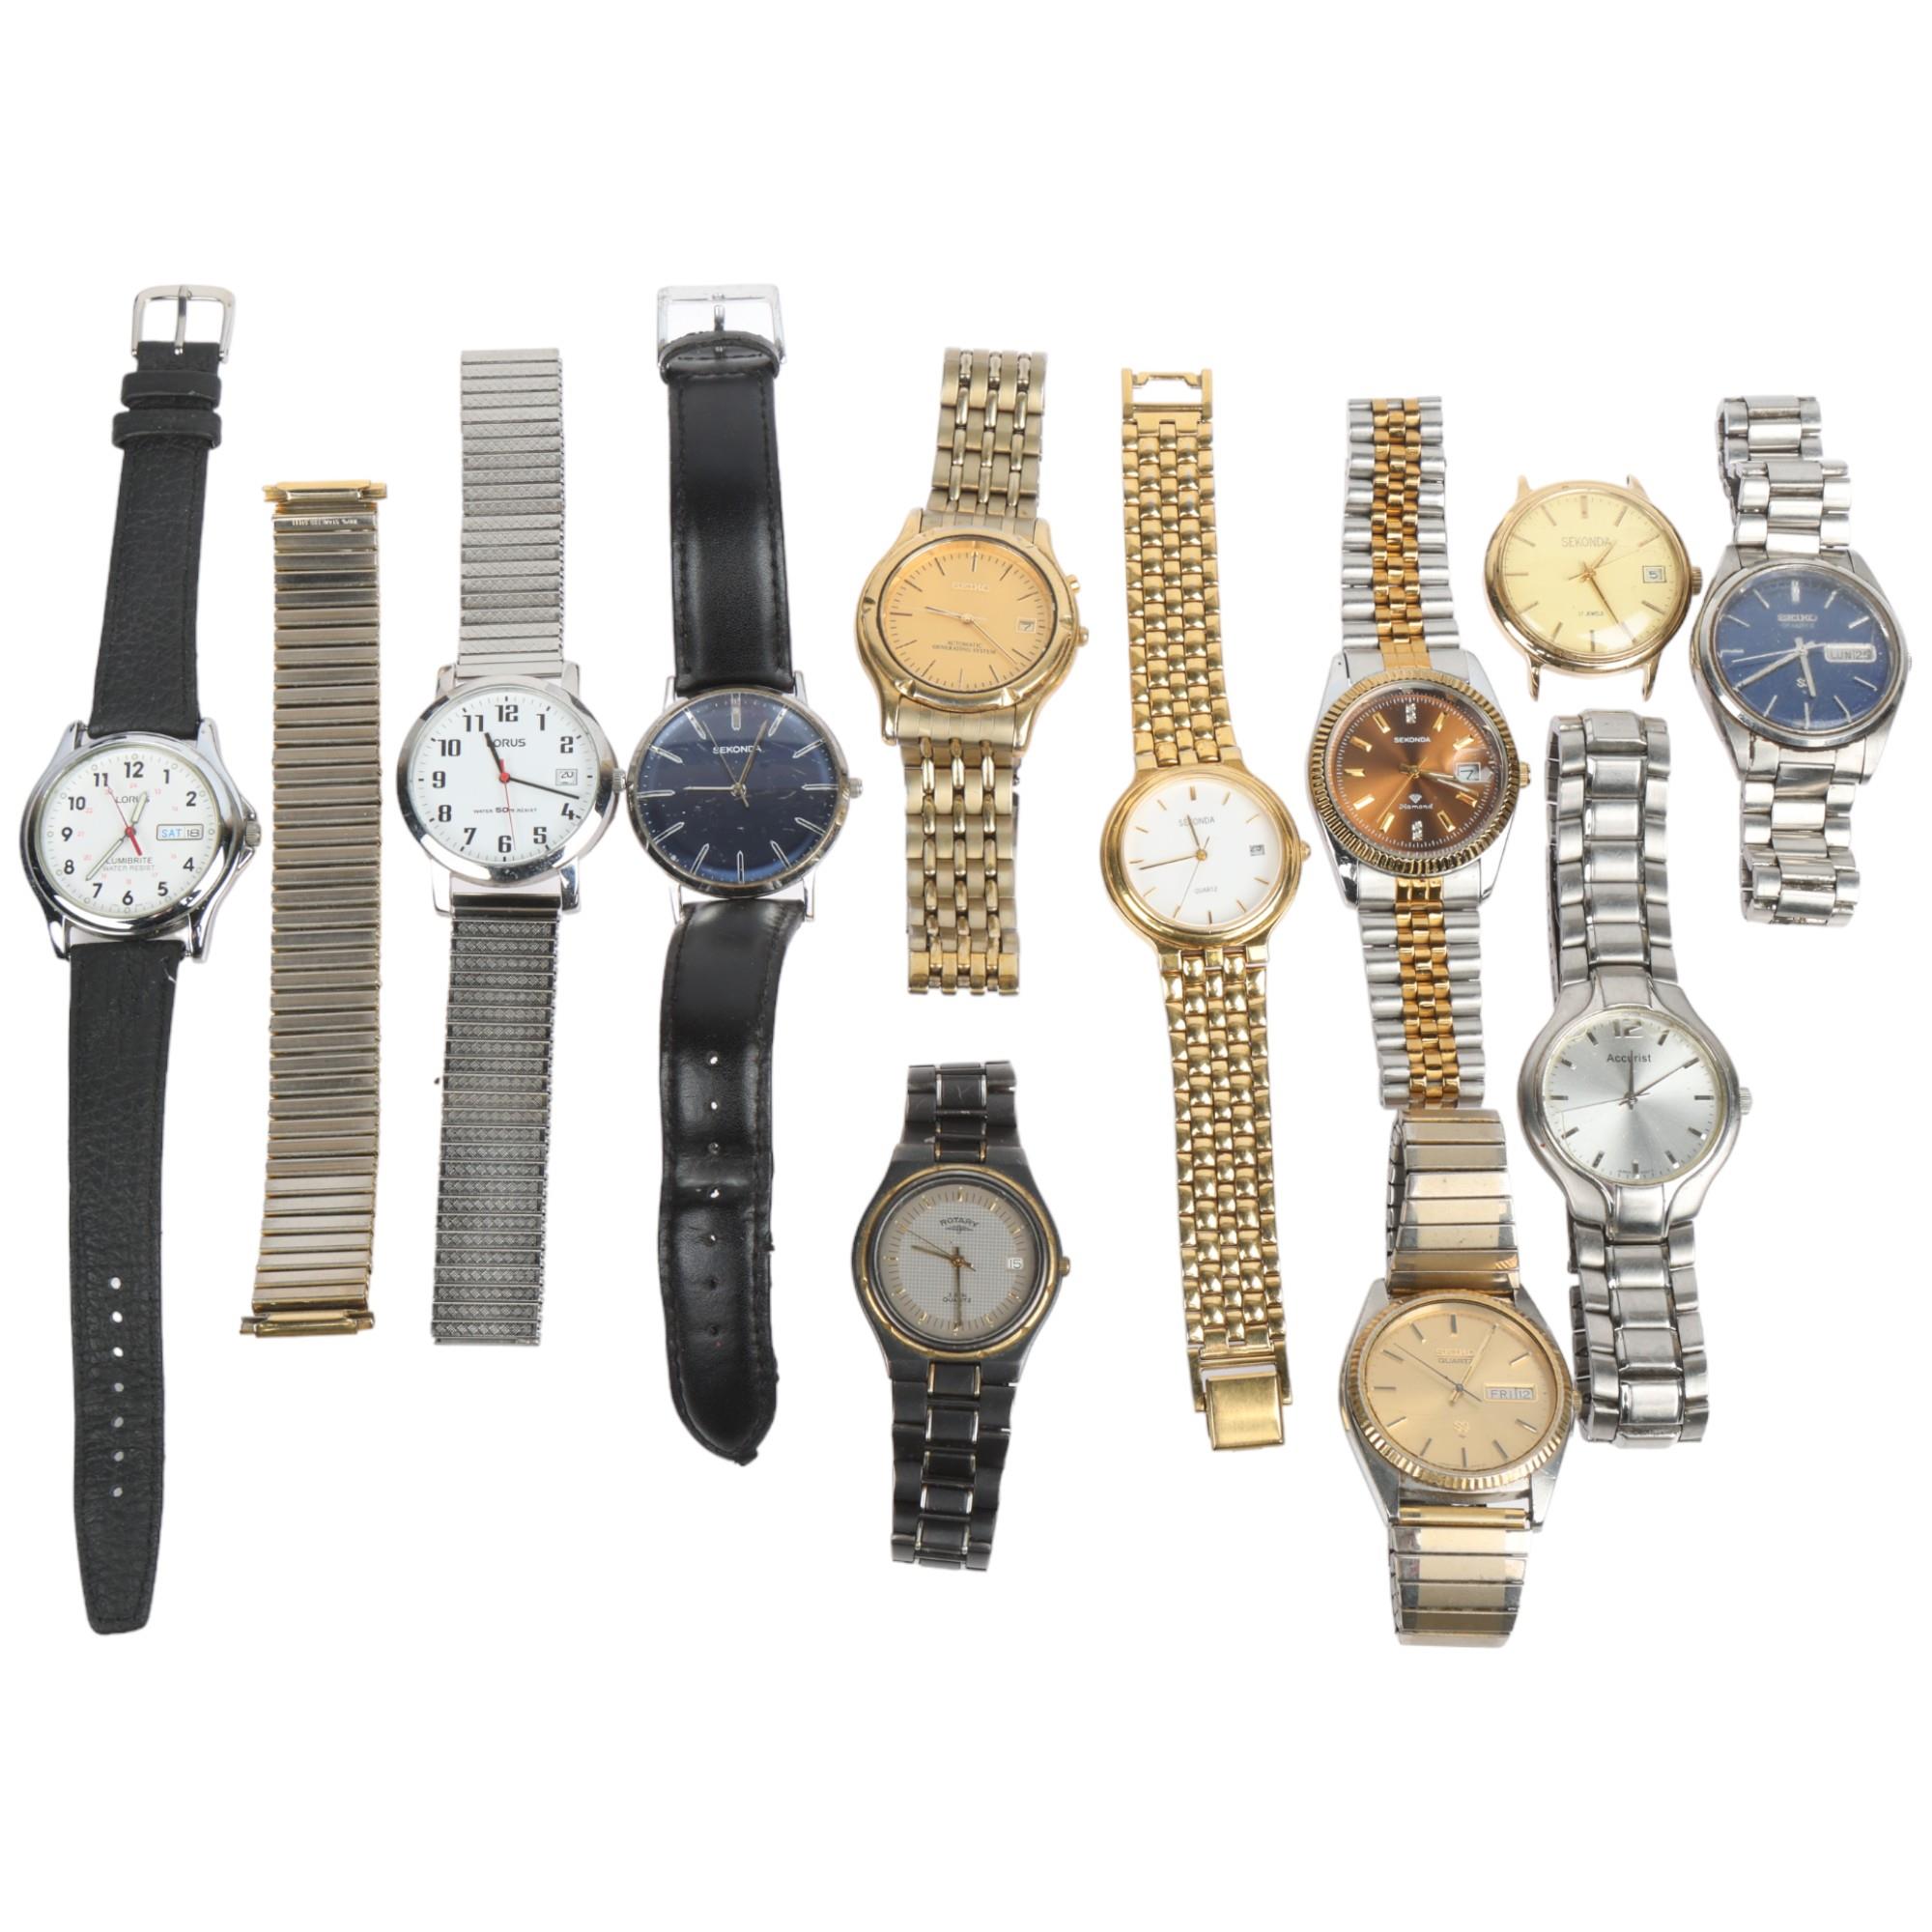 A quantity of wristwatches, including Seiko quartz day/date, Sekonda, Accurist, etc Condition